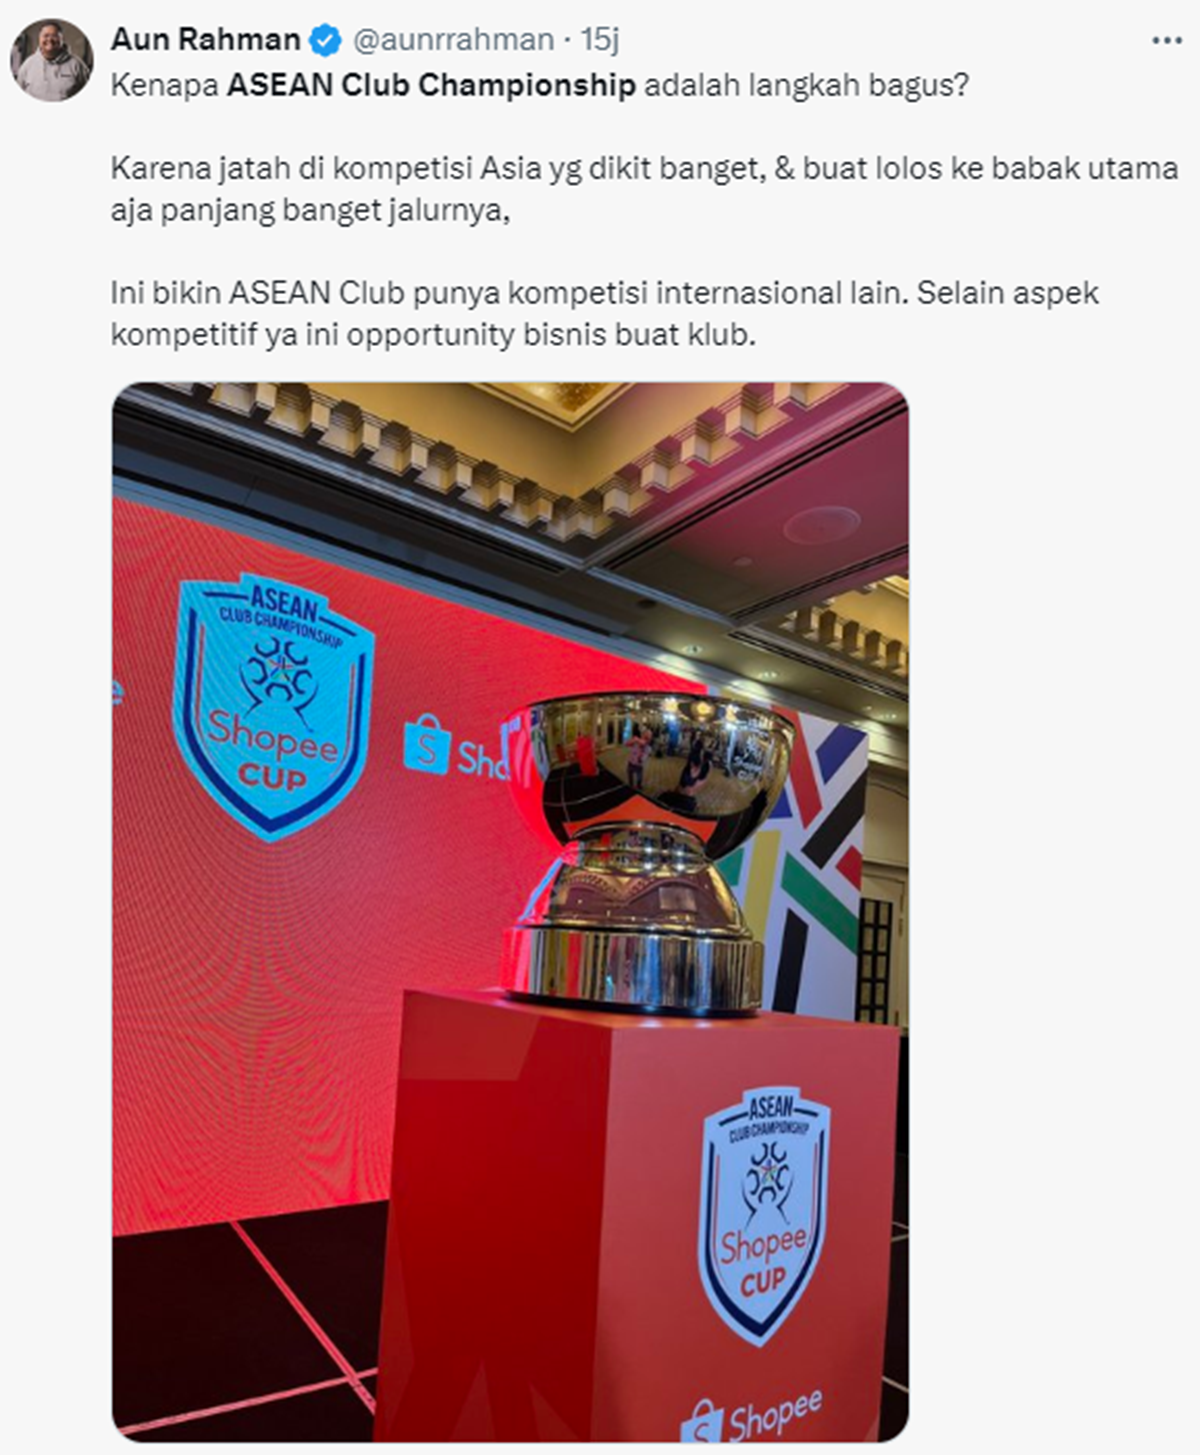 Shopee Cup ASEAN Club Championship.